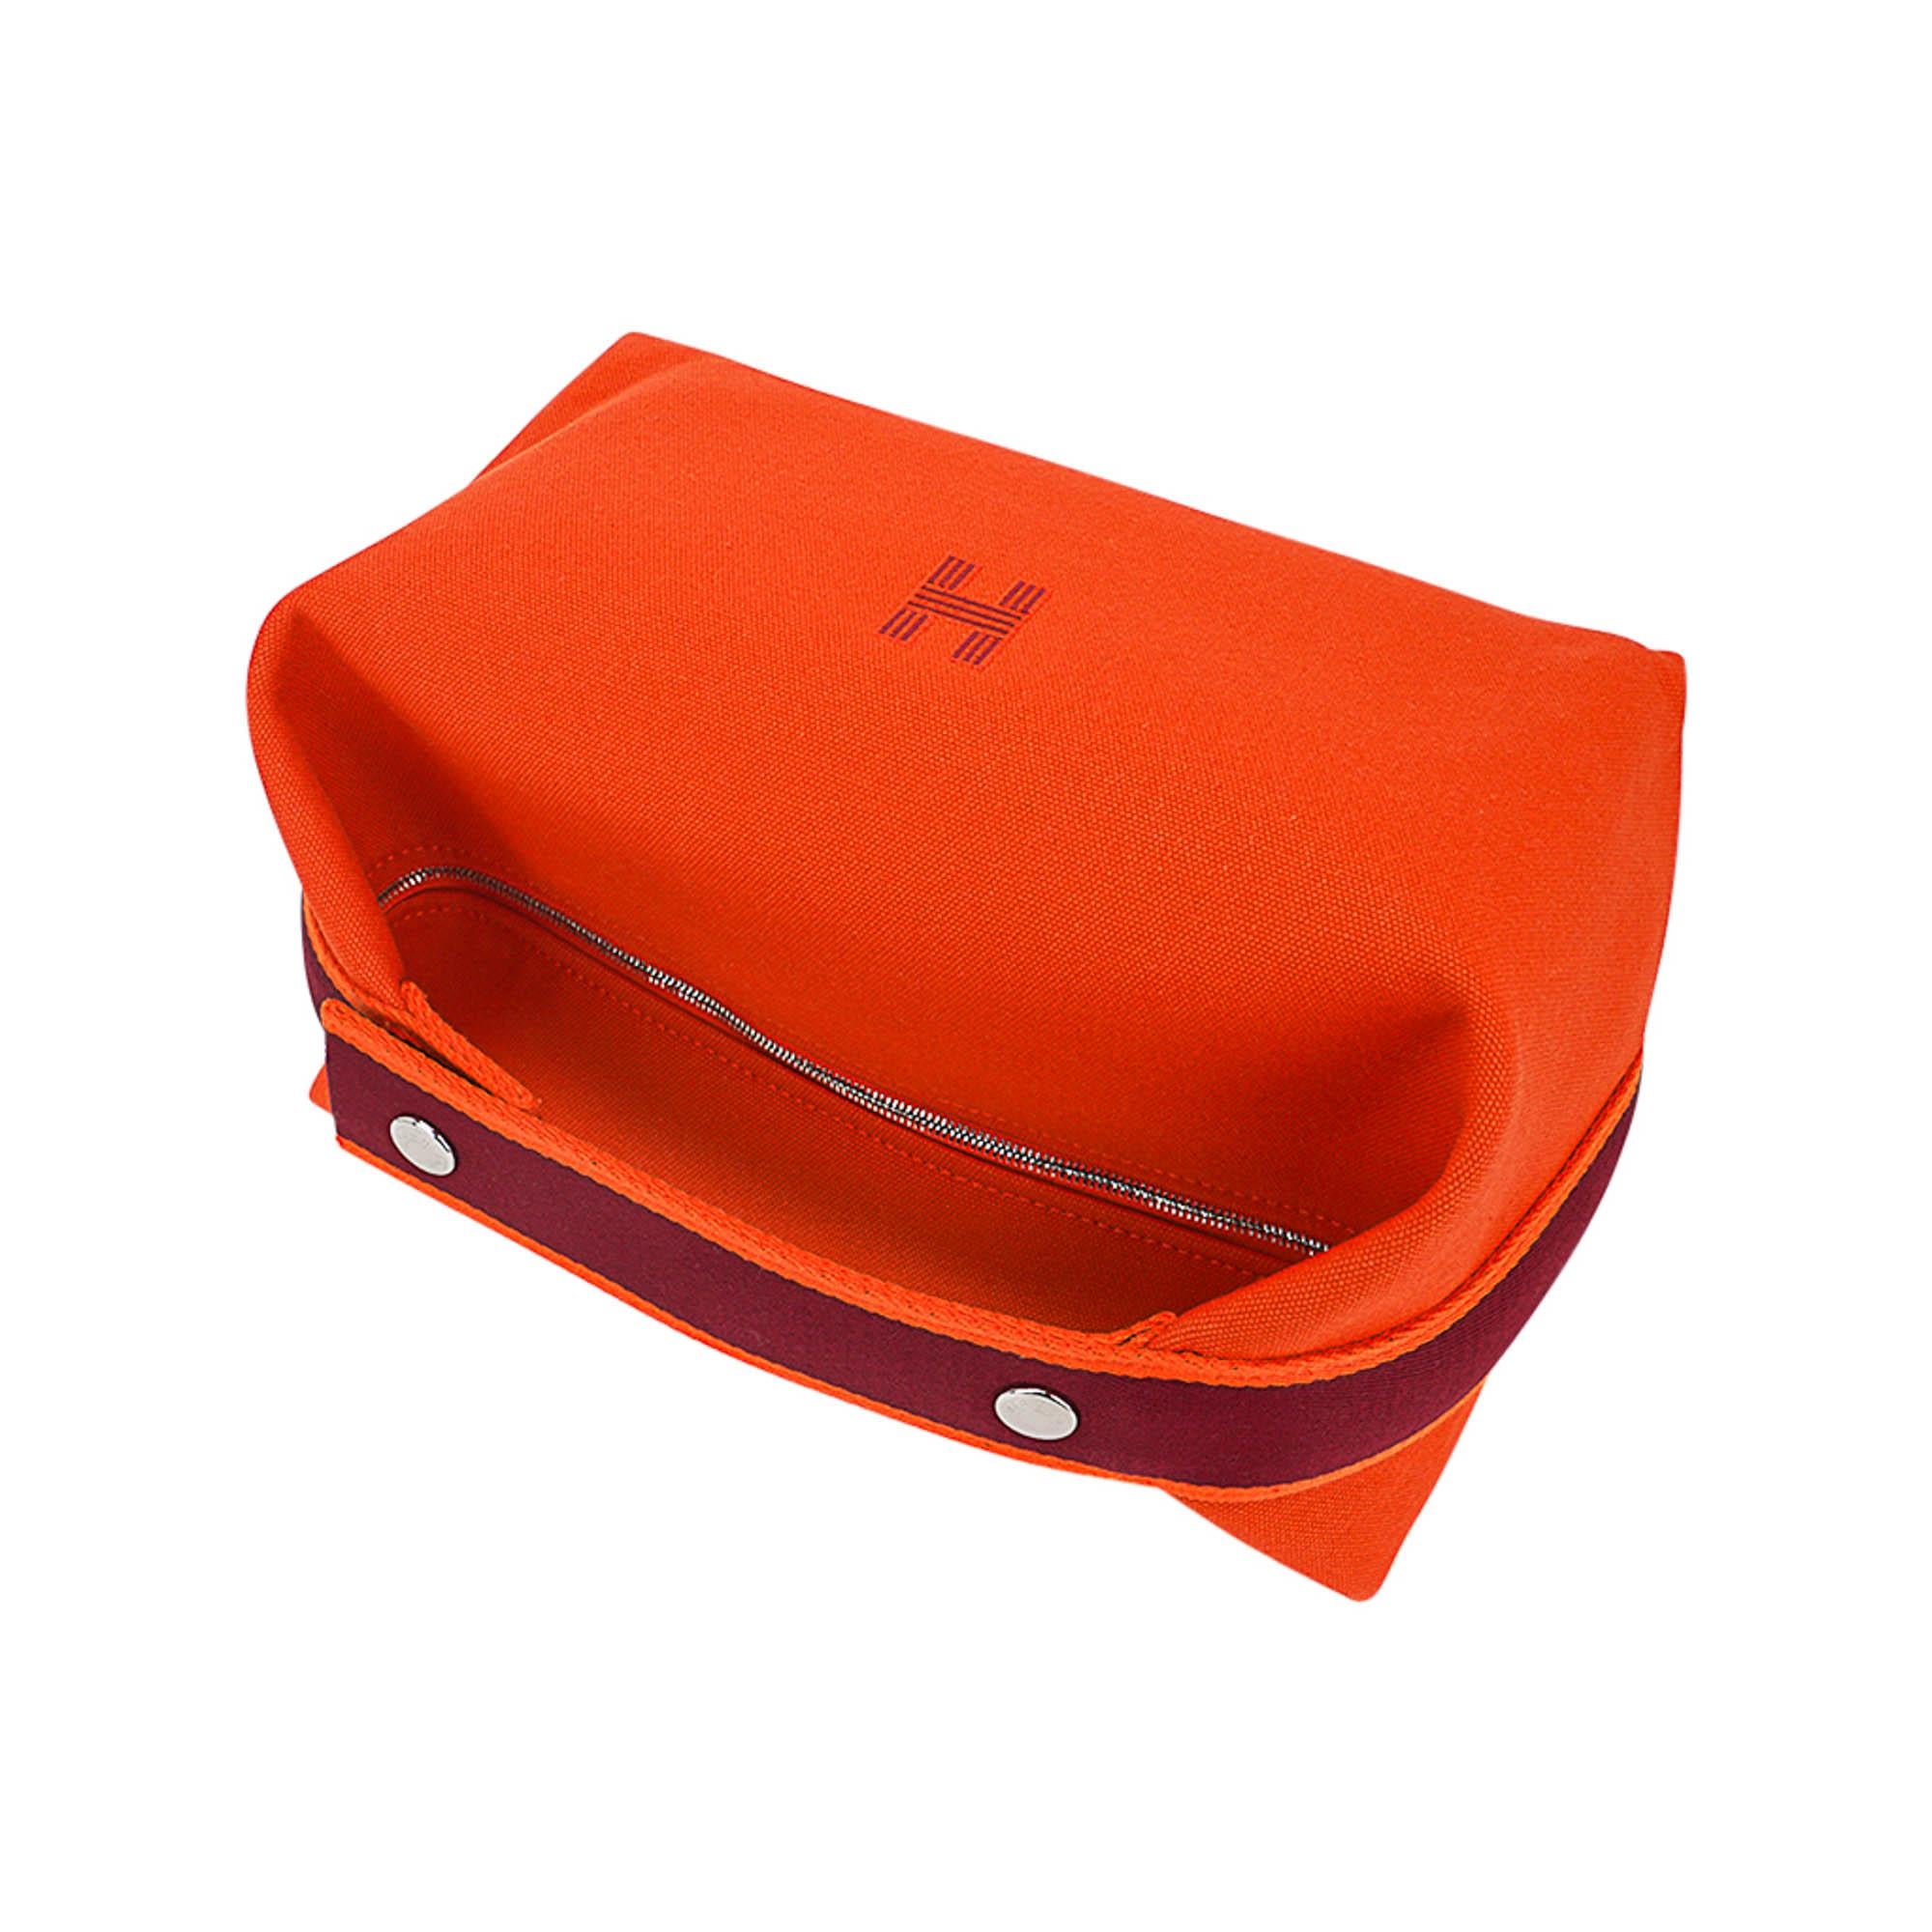 Hermes Bride-A-Brac Orange Koffer Großes Modell (Rot)